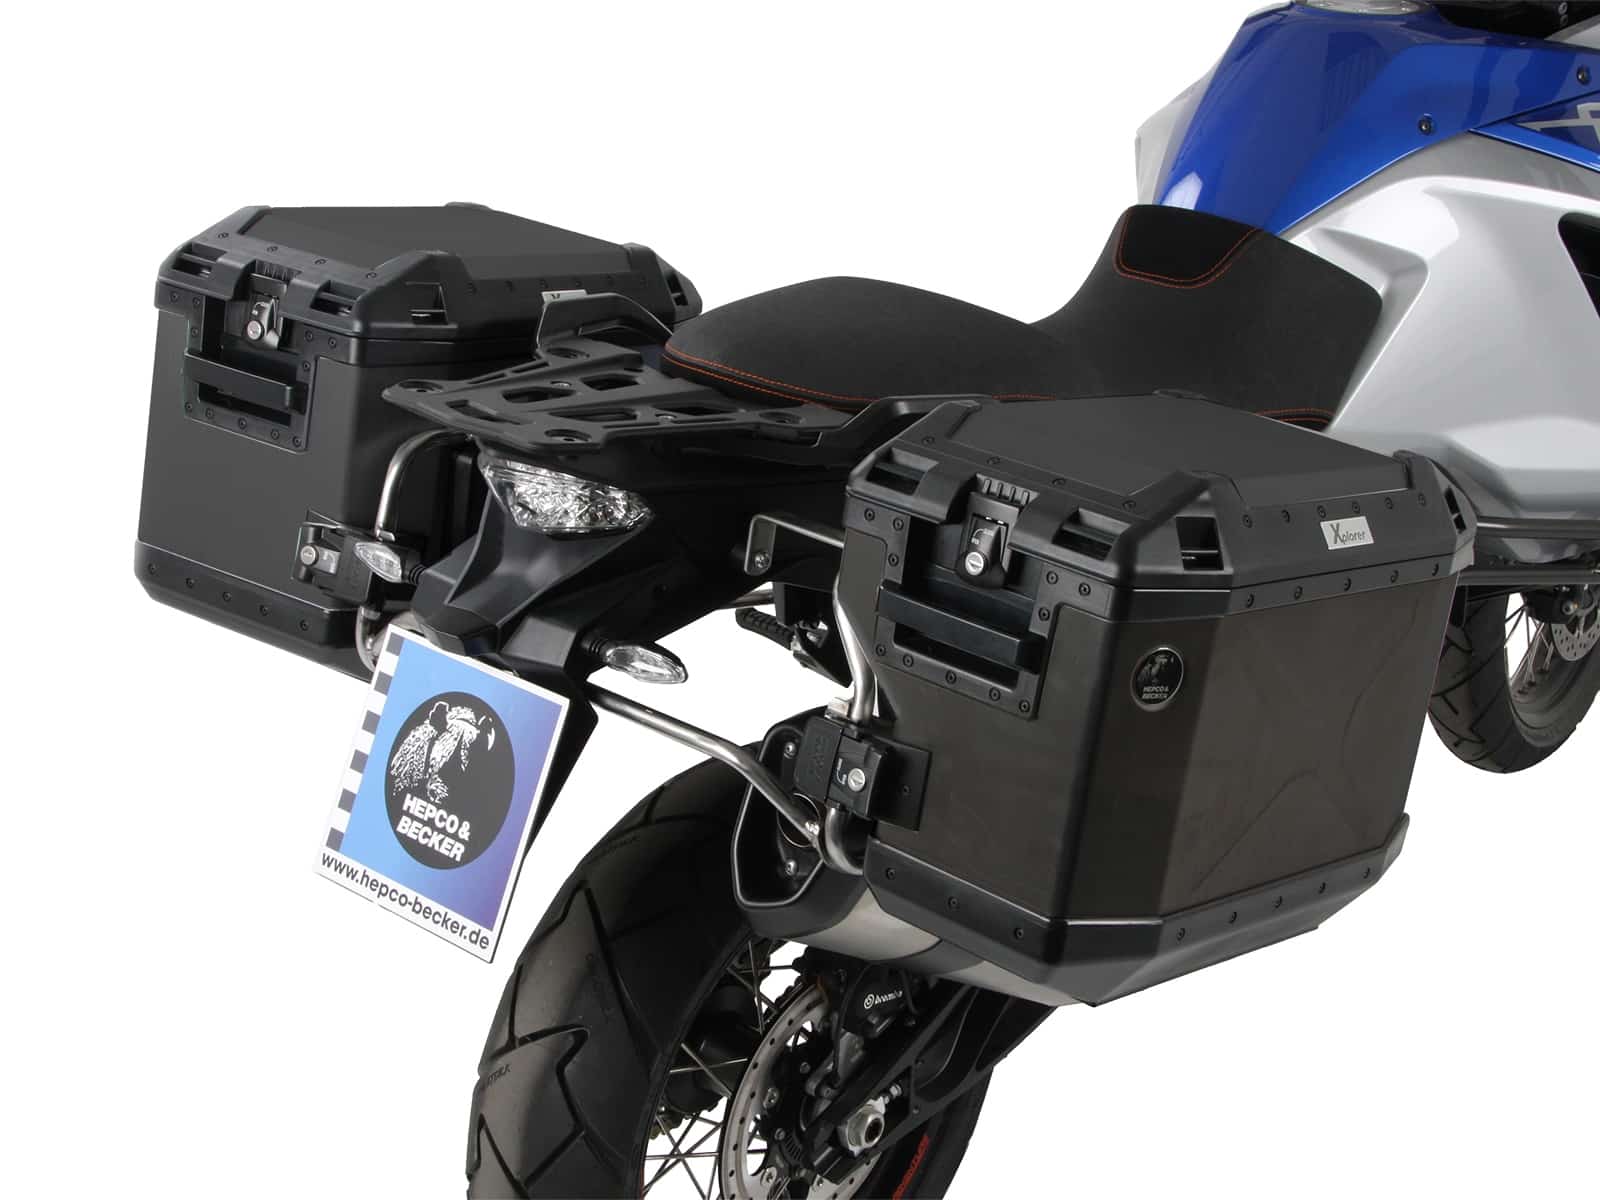 Kofferträgerset Cutout Edelstahlträger inkl. Xplorer schwarz Kofferset für KTM 1090 Adventure (2017-)